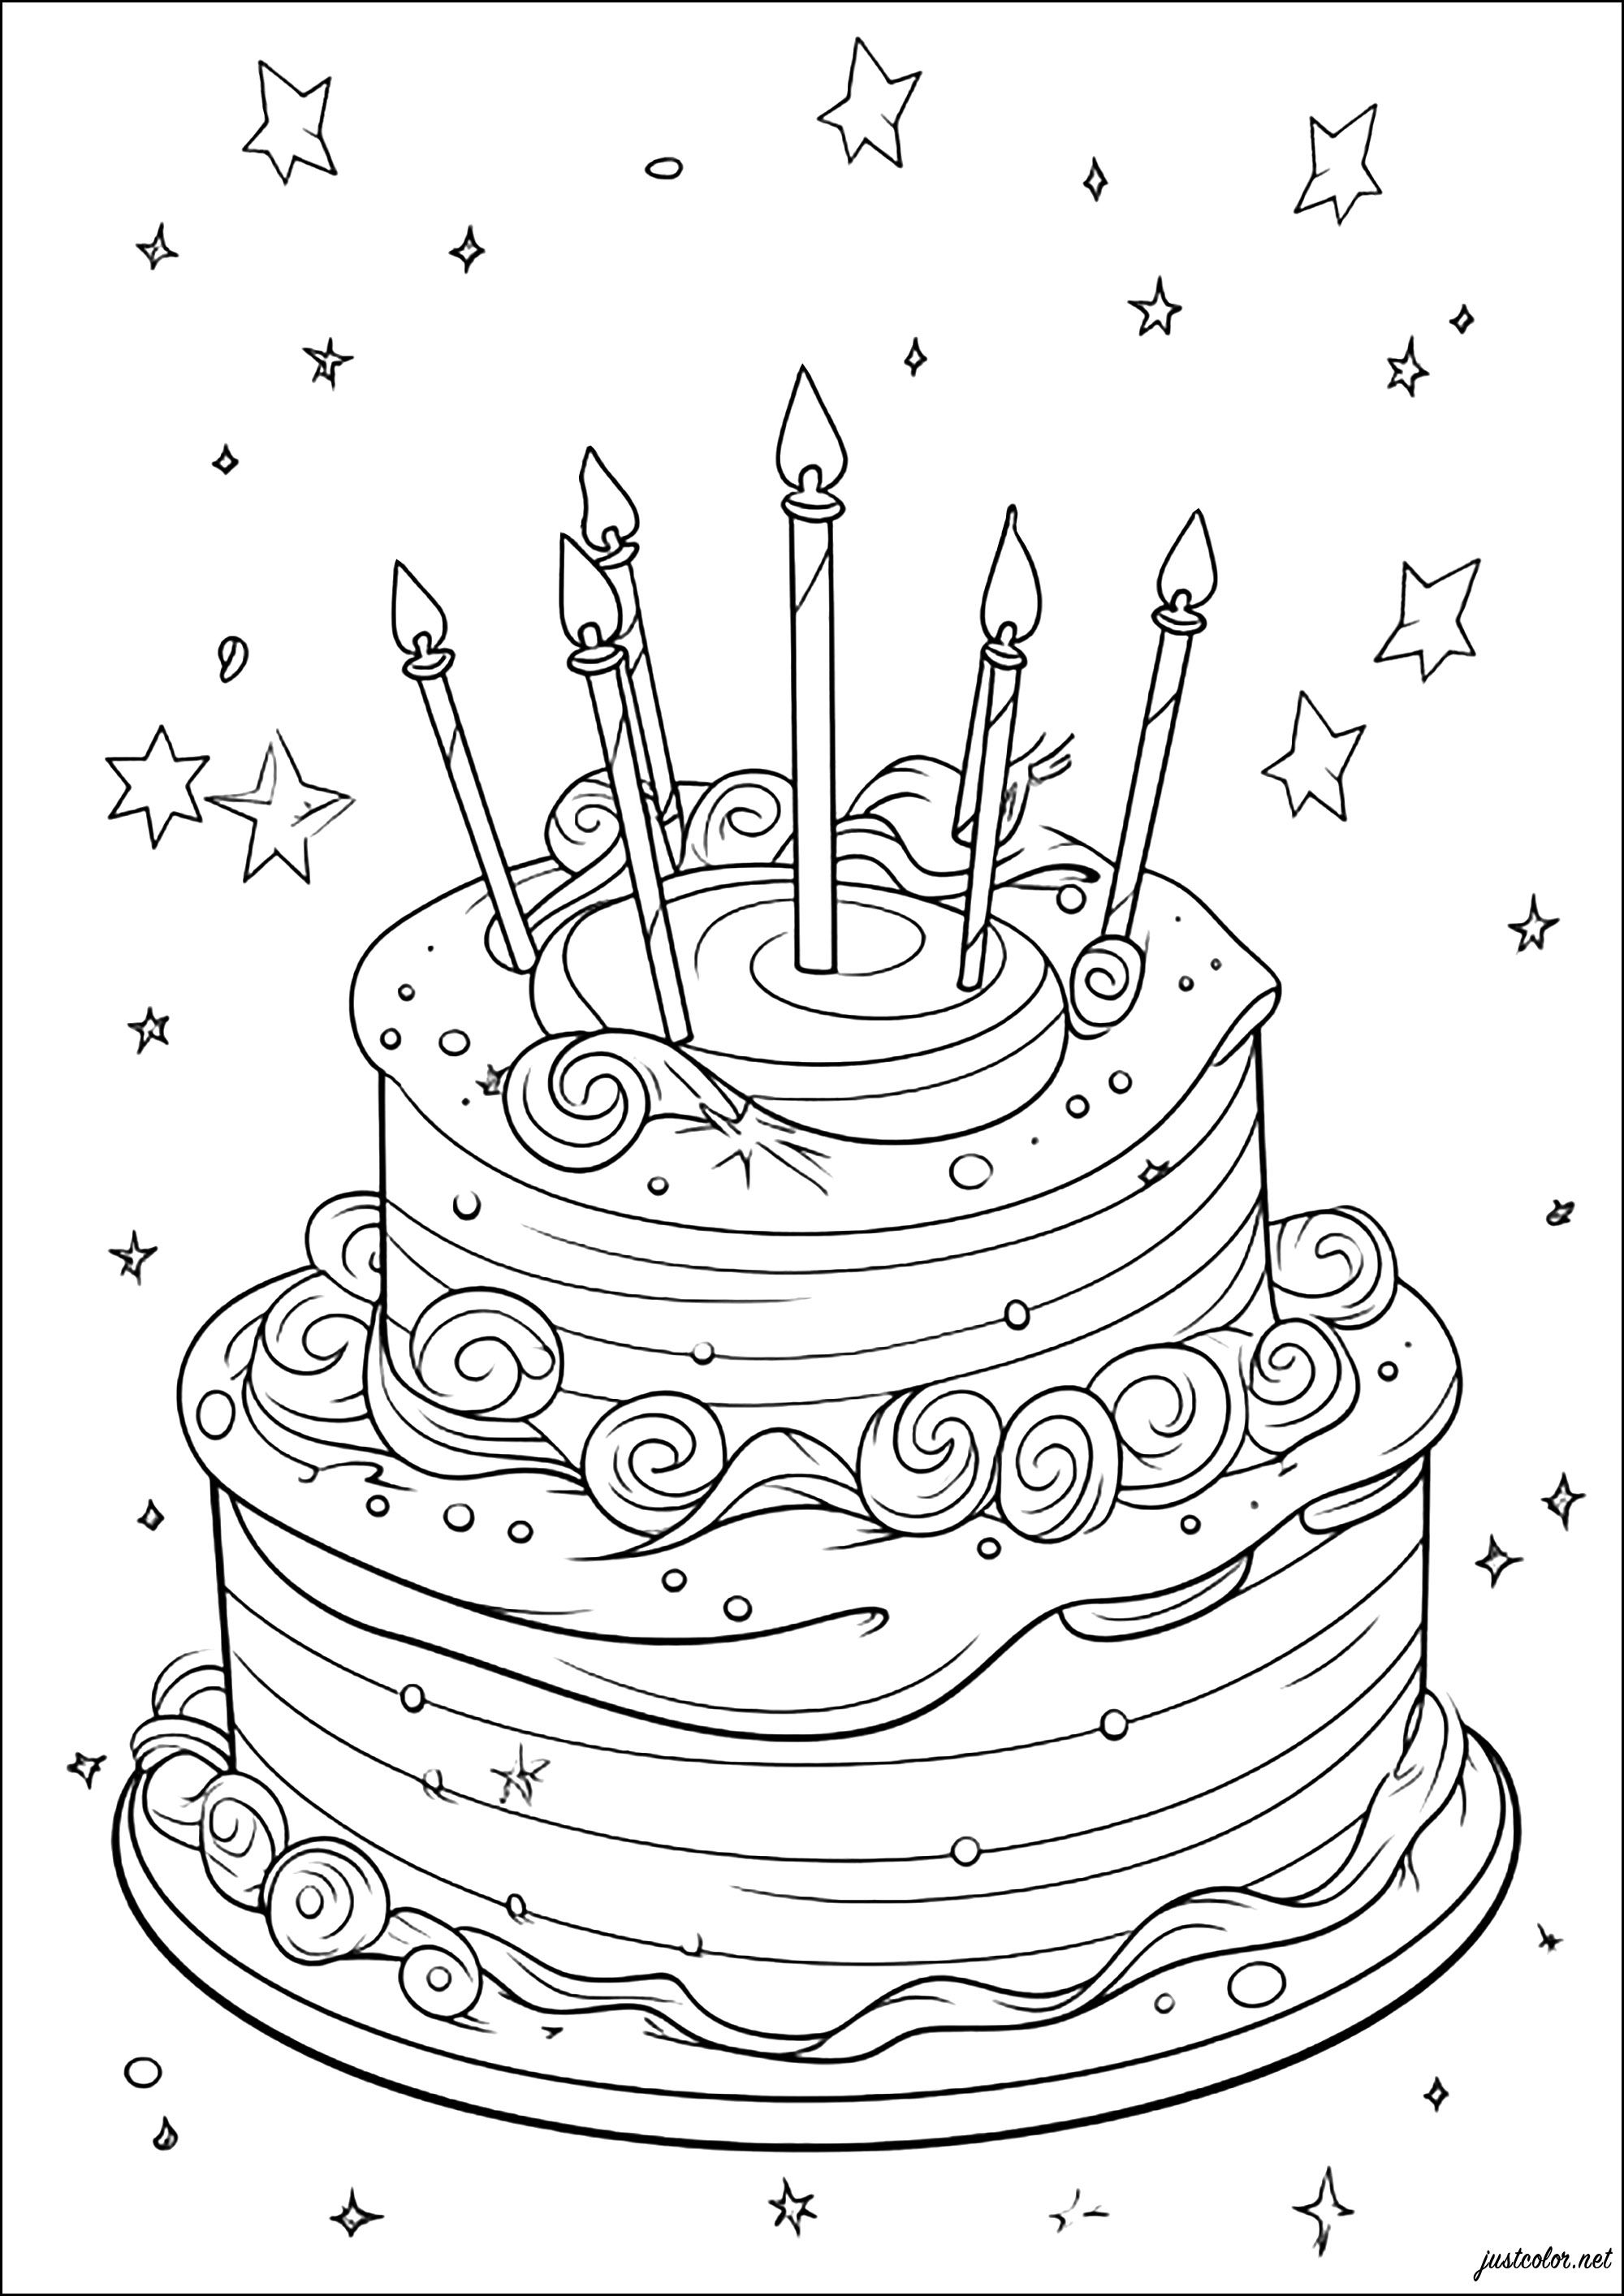 Enorme tarta de cumpleaños con fondo estrellado